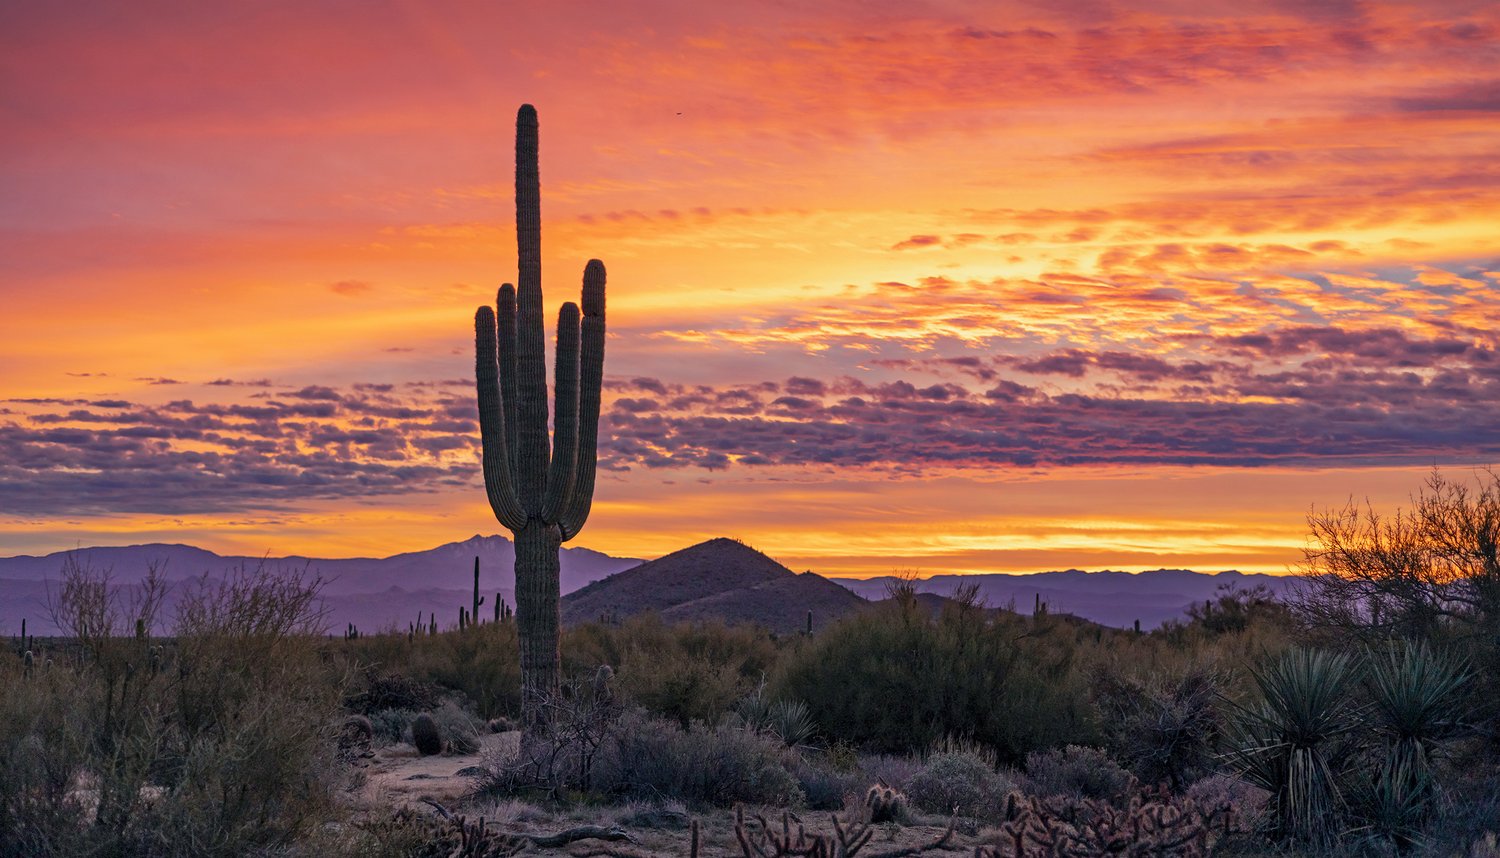 Southwest USA Sunsets & Sunrises Stock Images | Buy Photos